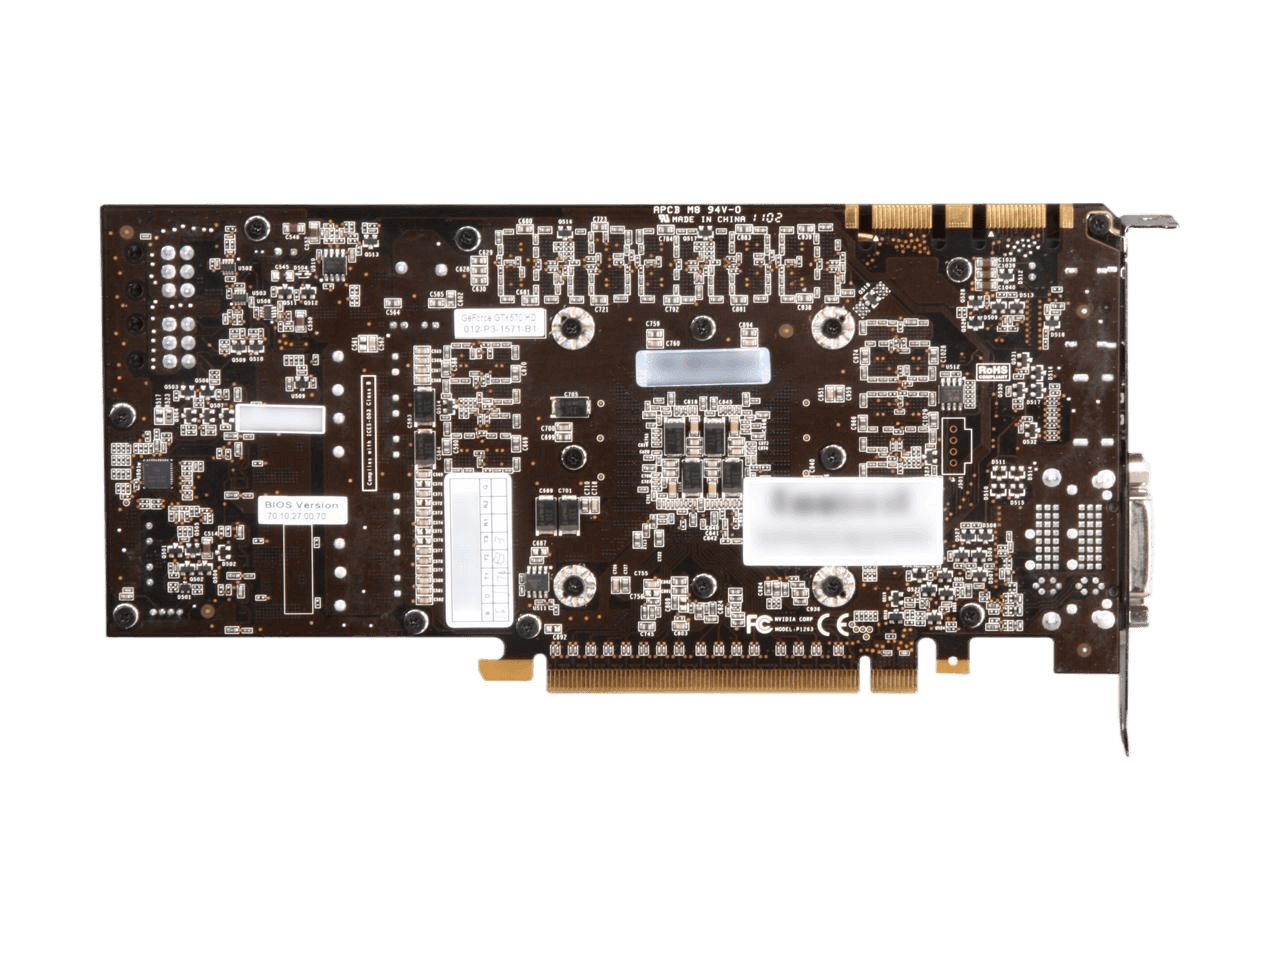 EVGA SuperClocked GeForce GTX 570 HD w/Display-Port (Fermi) 1280MB 320-bit GDDR5 PCI Express 2.0 x16 HDCP Ready SLI Support Video Card 012-P3-1573-AR